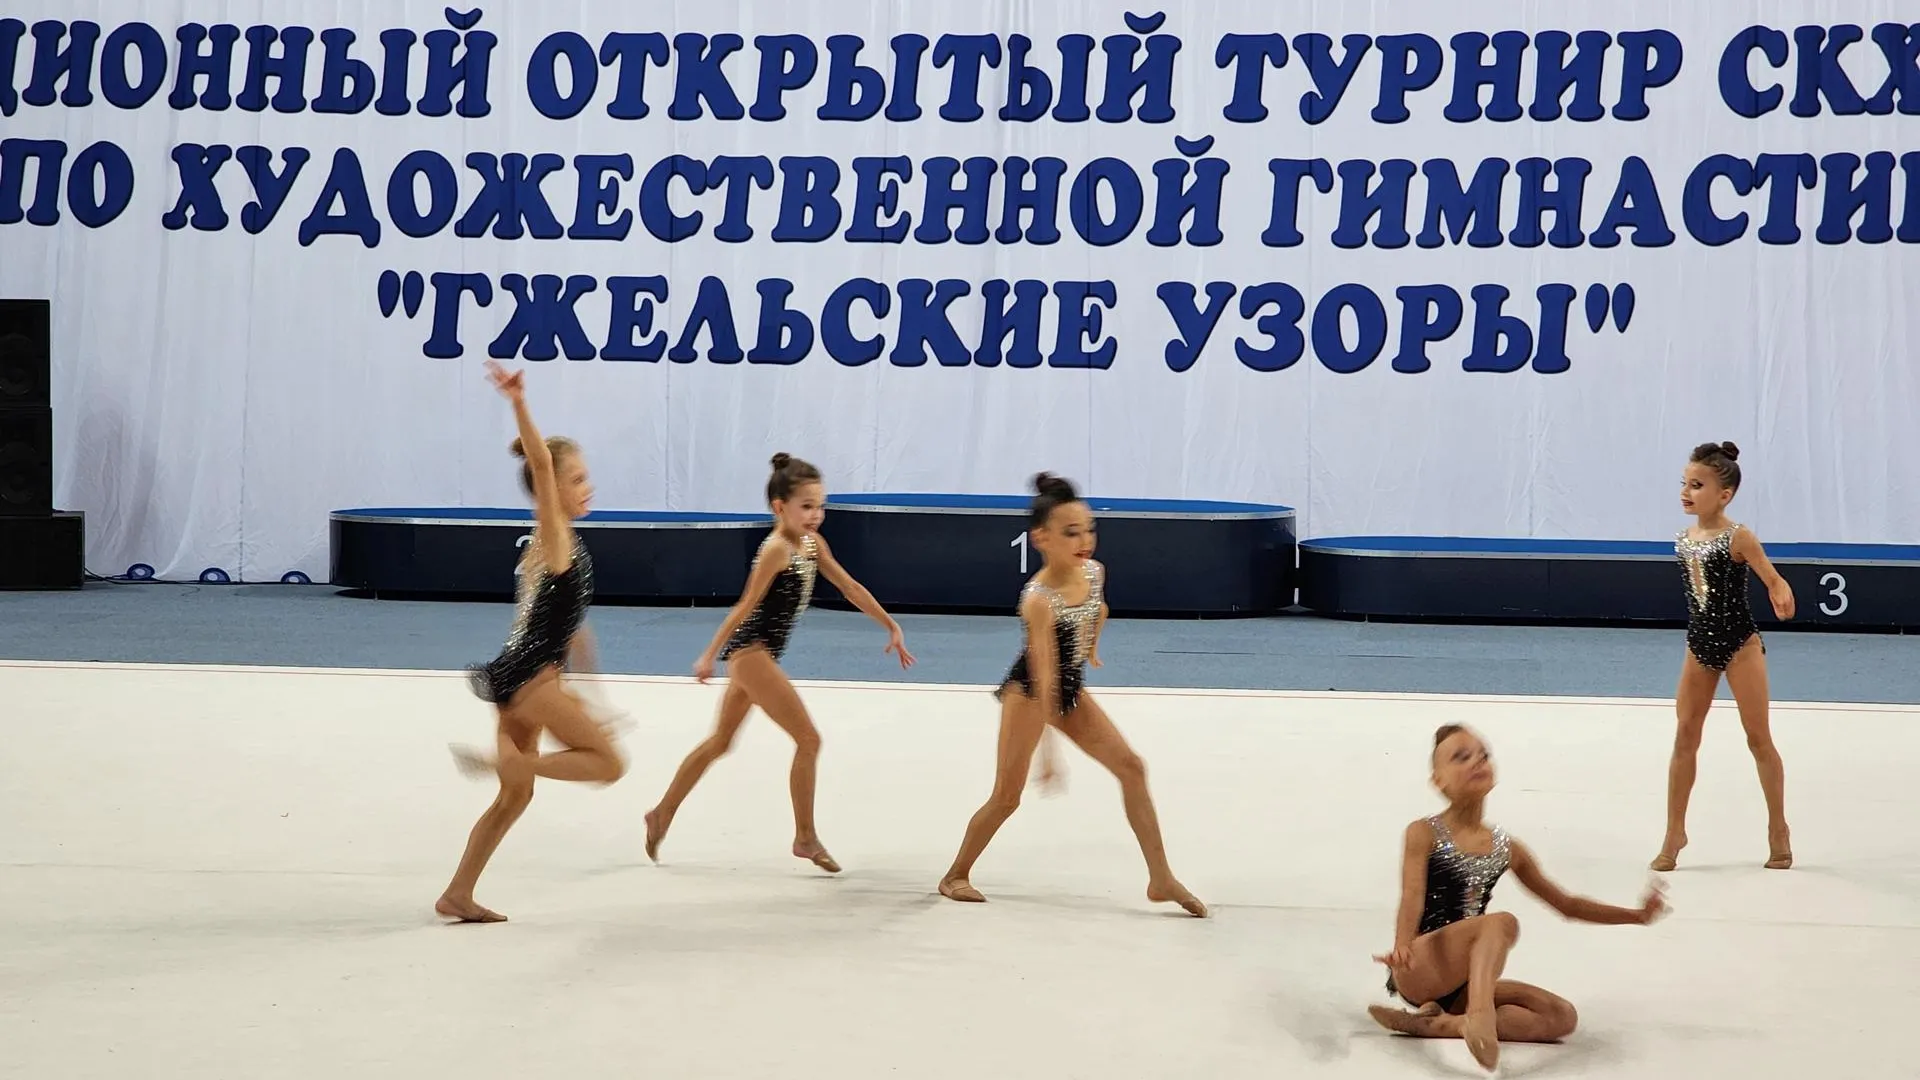 В подмосковном Раменском успешно проведен крупный турнир по художественной гимнастике